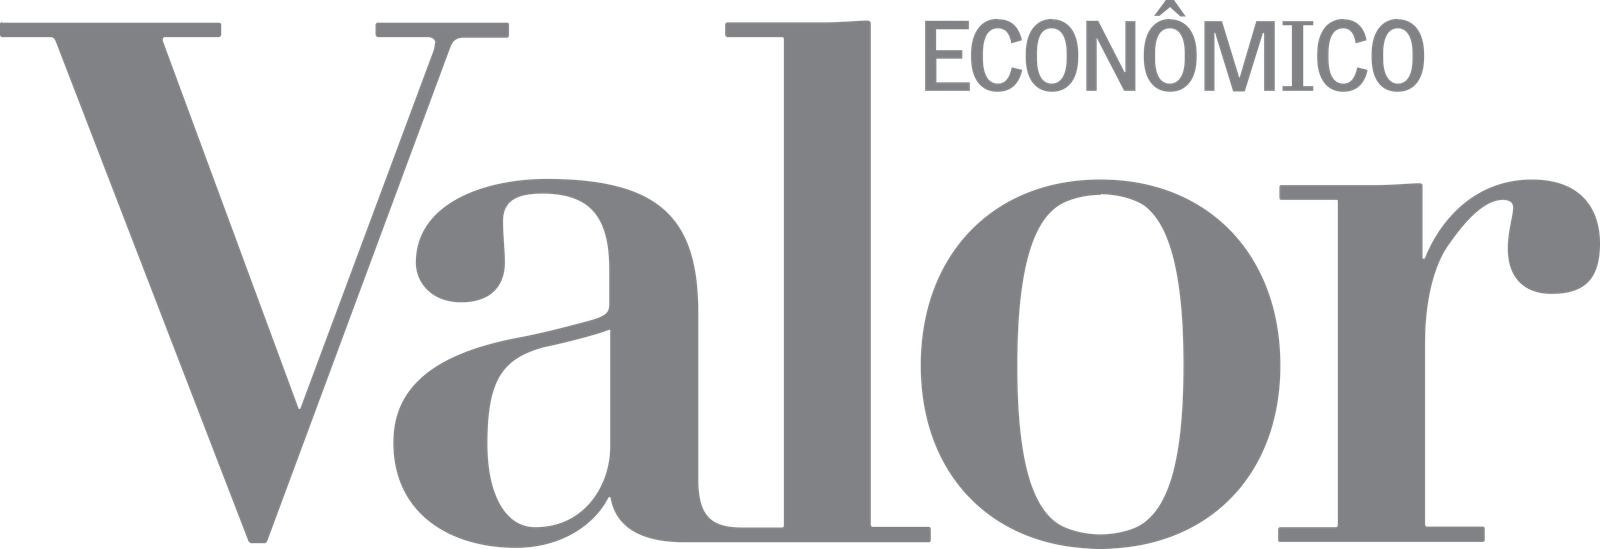 Imagem do logo do jornal digital "Valor Econômico"